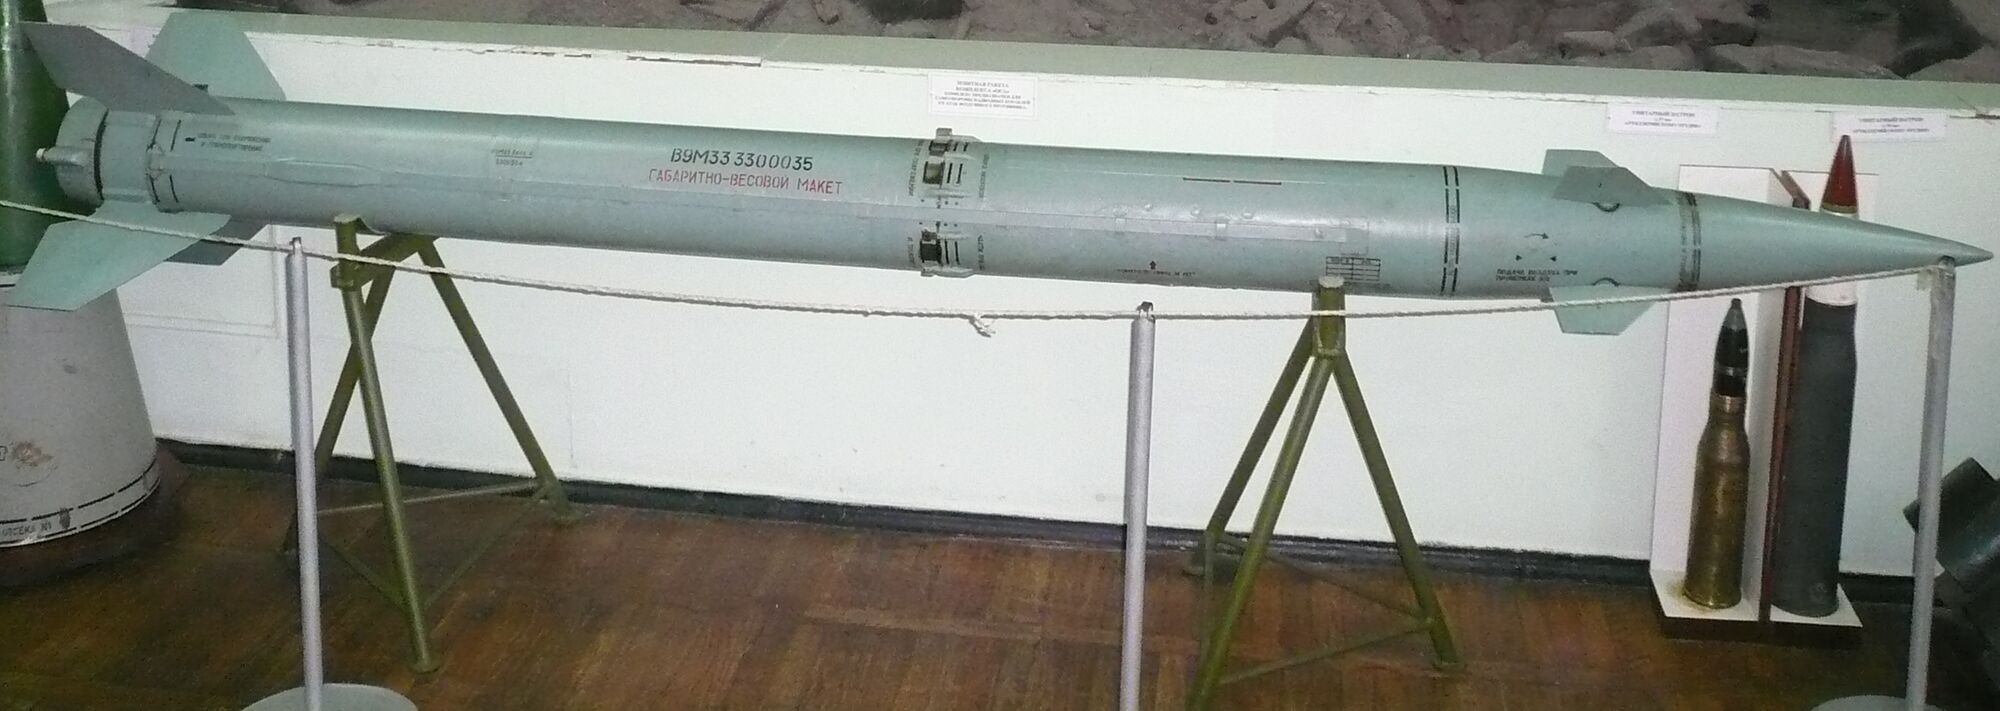 Ракета 9М33 до ЗРК "Оса"